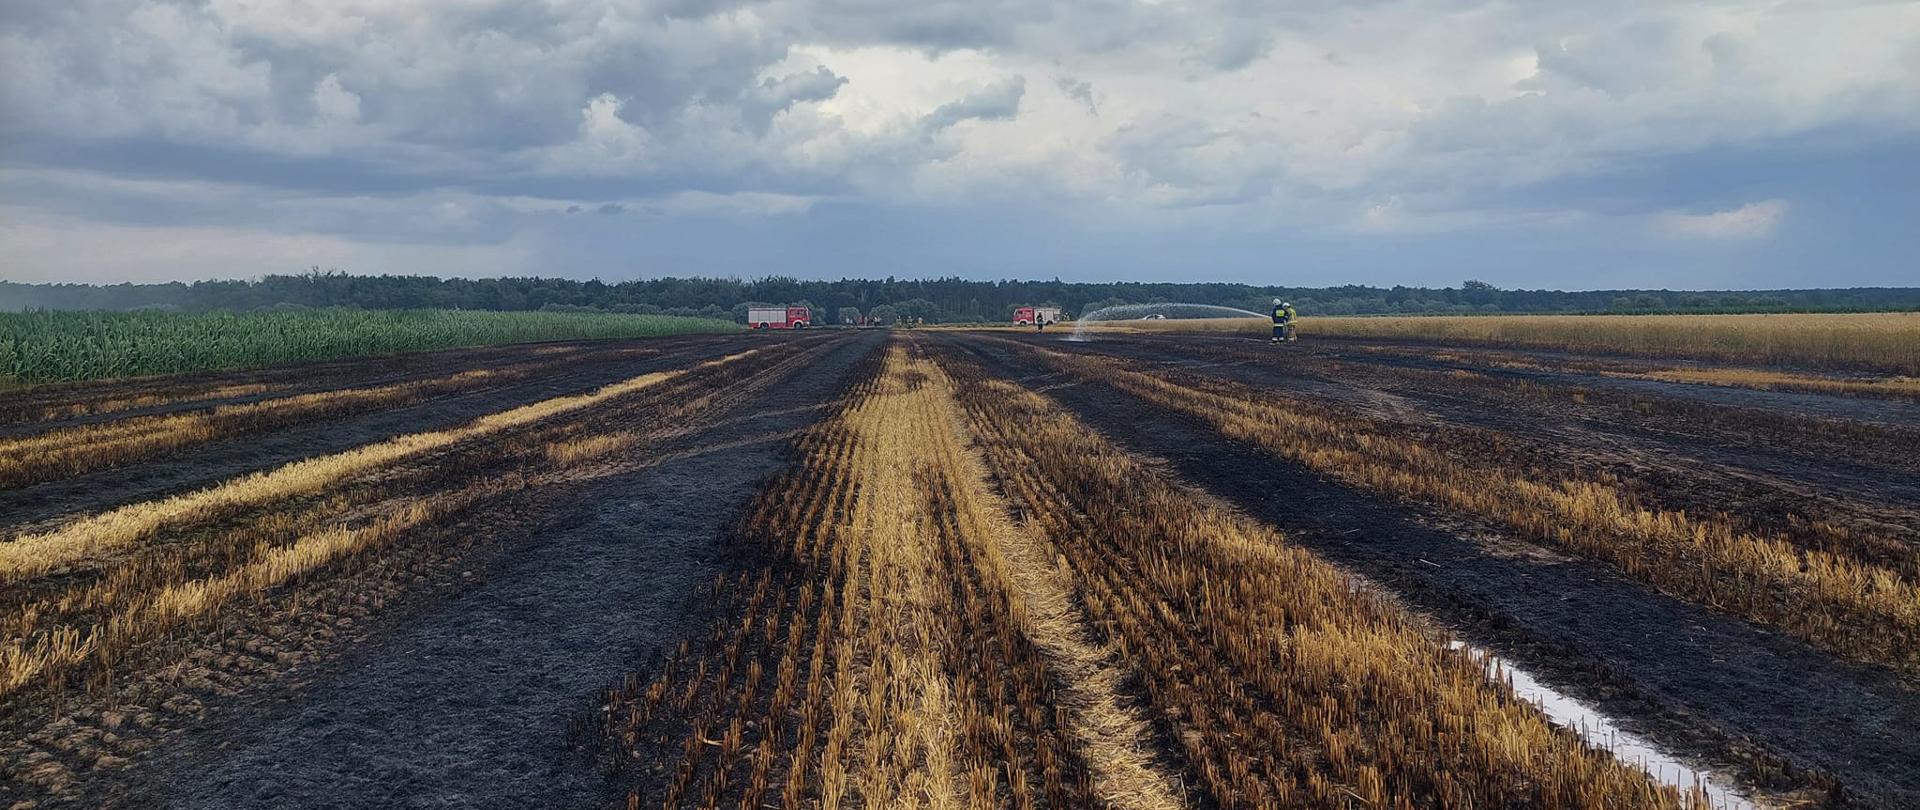 Pożar słomy i ścierniska. Pola w okolicy miejscowości Kołaczkowice. Na tle lasu dwa dwa wozy strażackie oraz strażacy dogaszający pożar ścierniska i słomy. Z lewej strony pole z kukurydzą, z prawej - zboże na pniu.